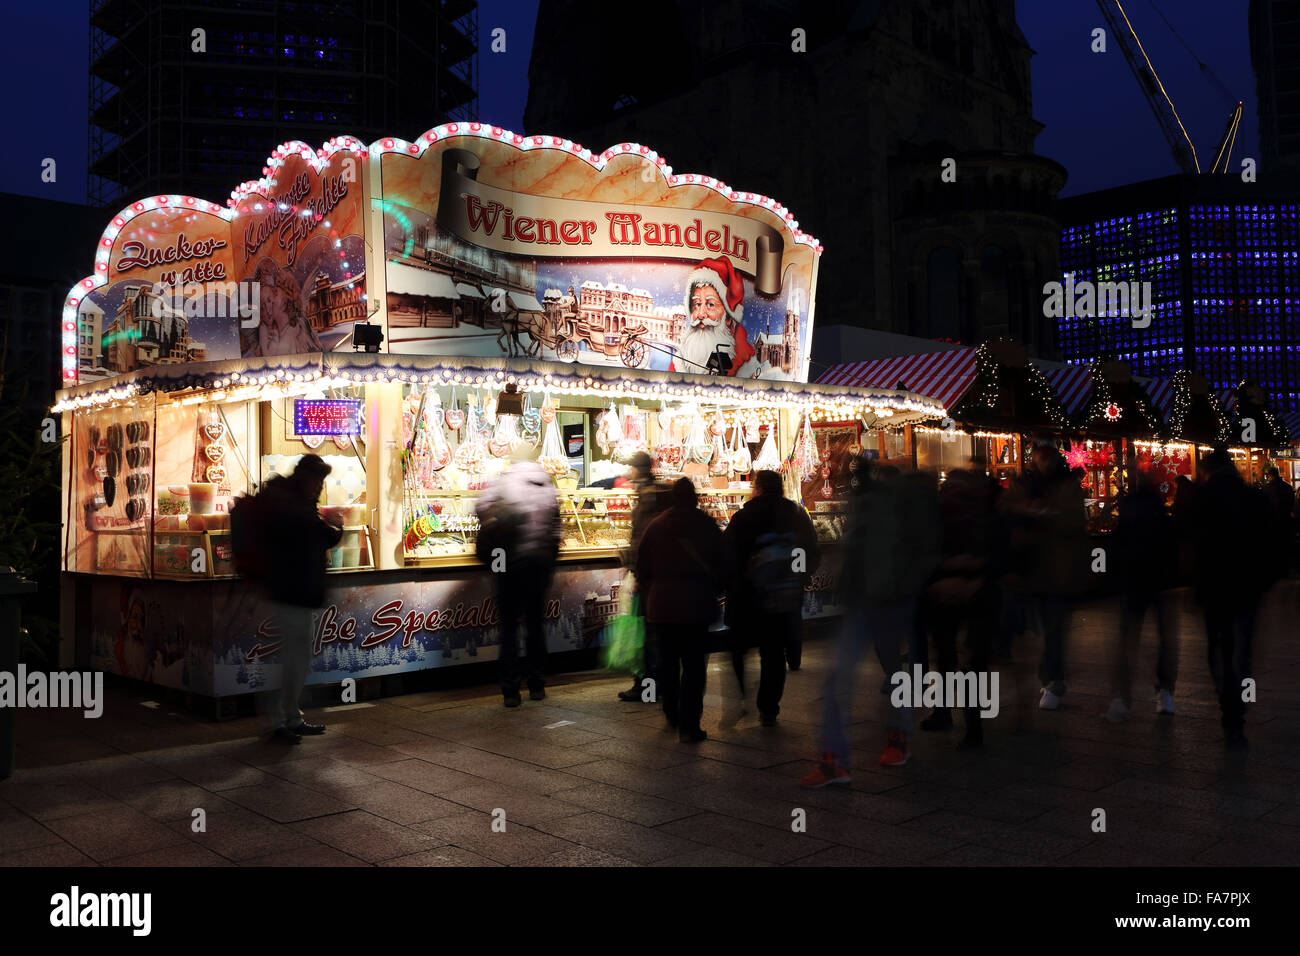 Ein Süßigkeiten und Nüssen Stand auf dem Weihnachtsmarkt der Stadt bin Gedachtniskirche Weihnachtsmarkt am Ku'damm in Berlin, Deutschland. Stockfoto